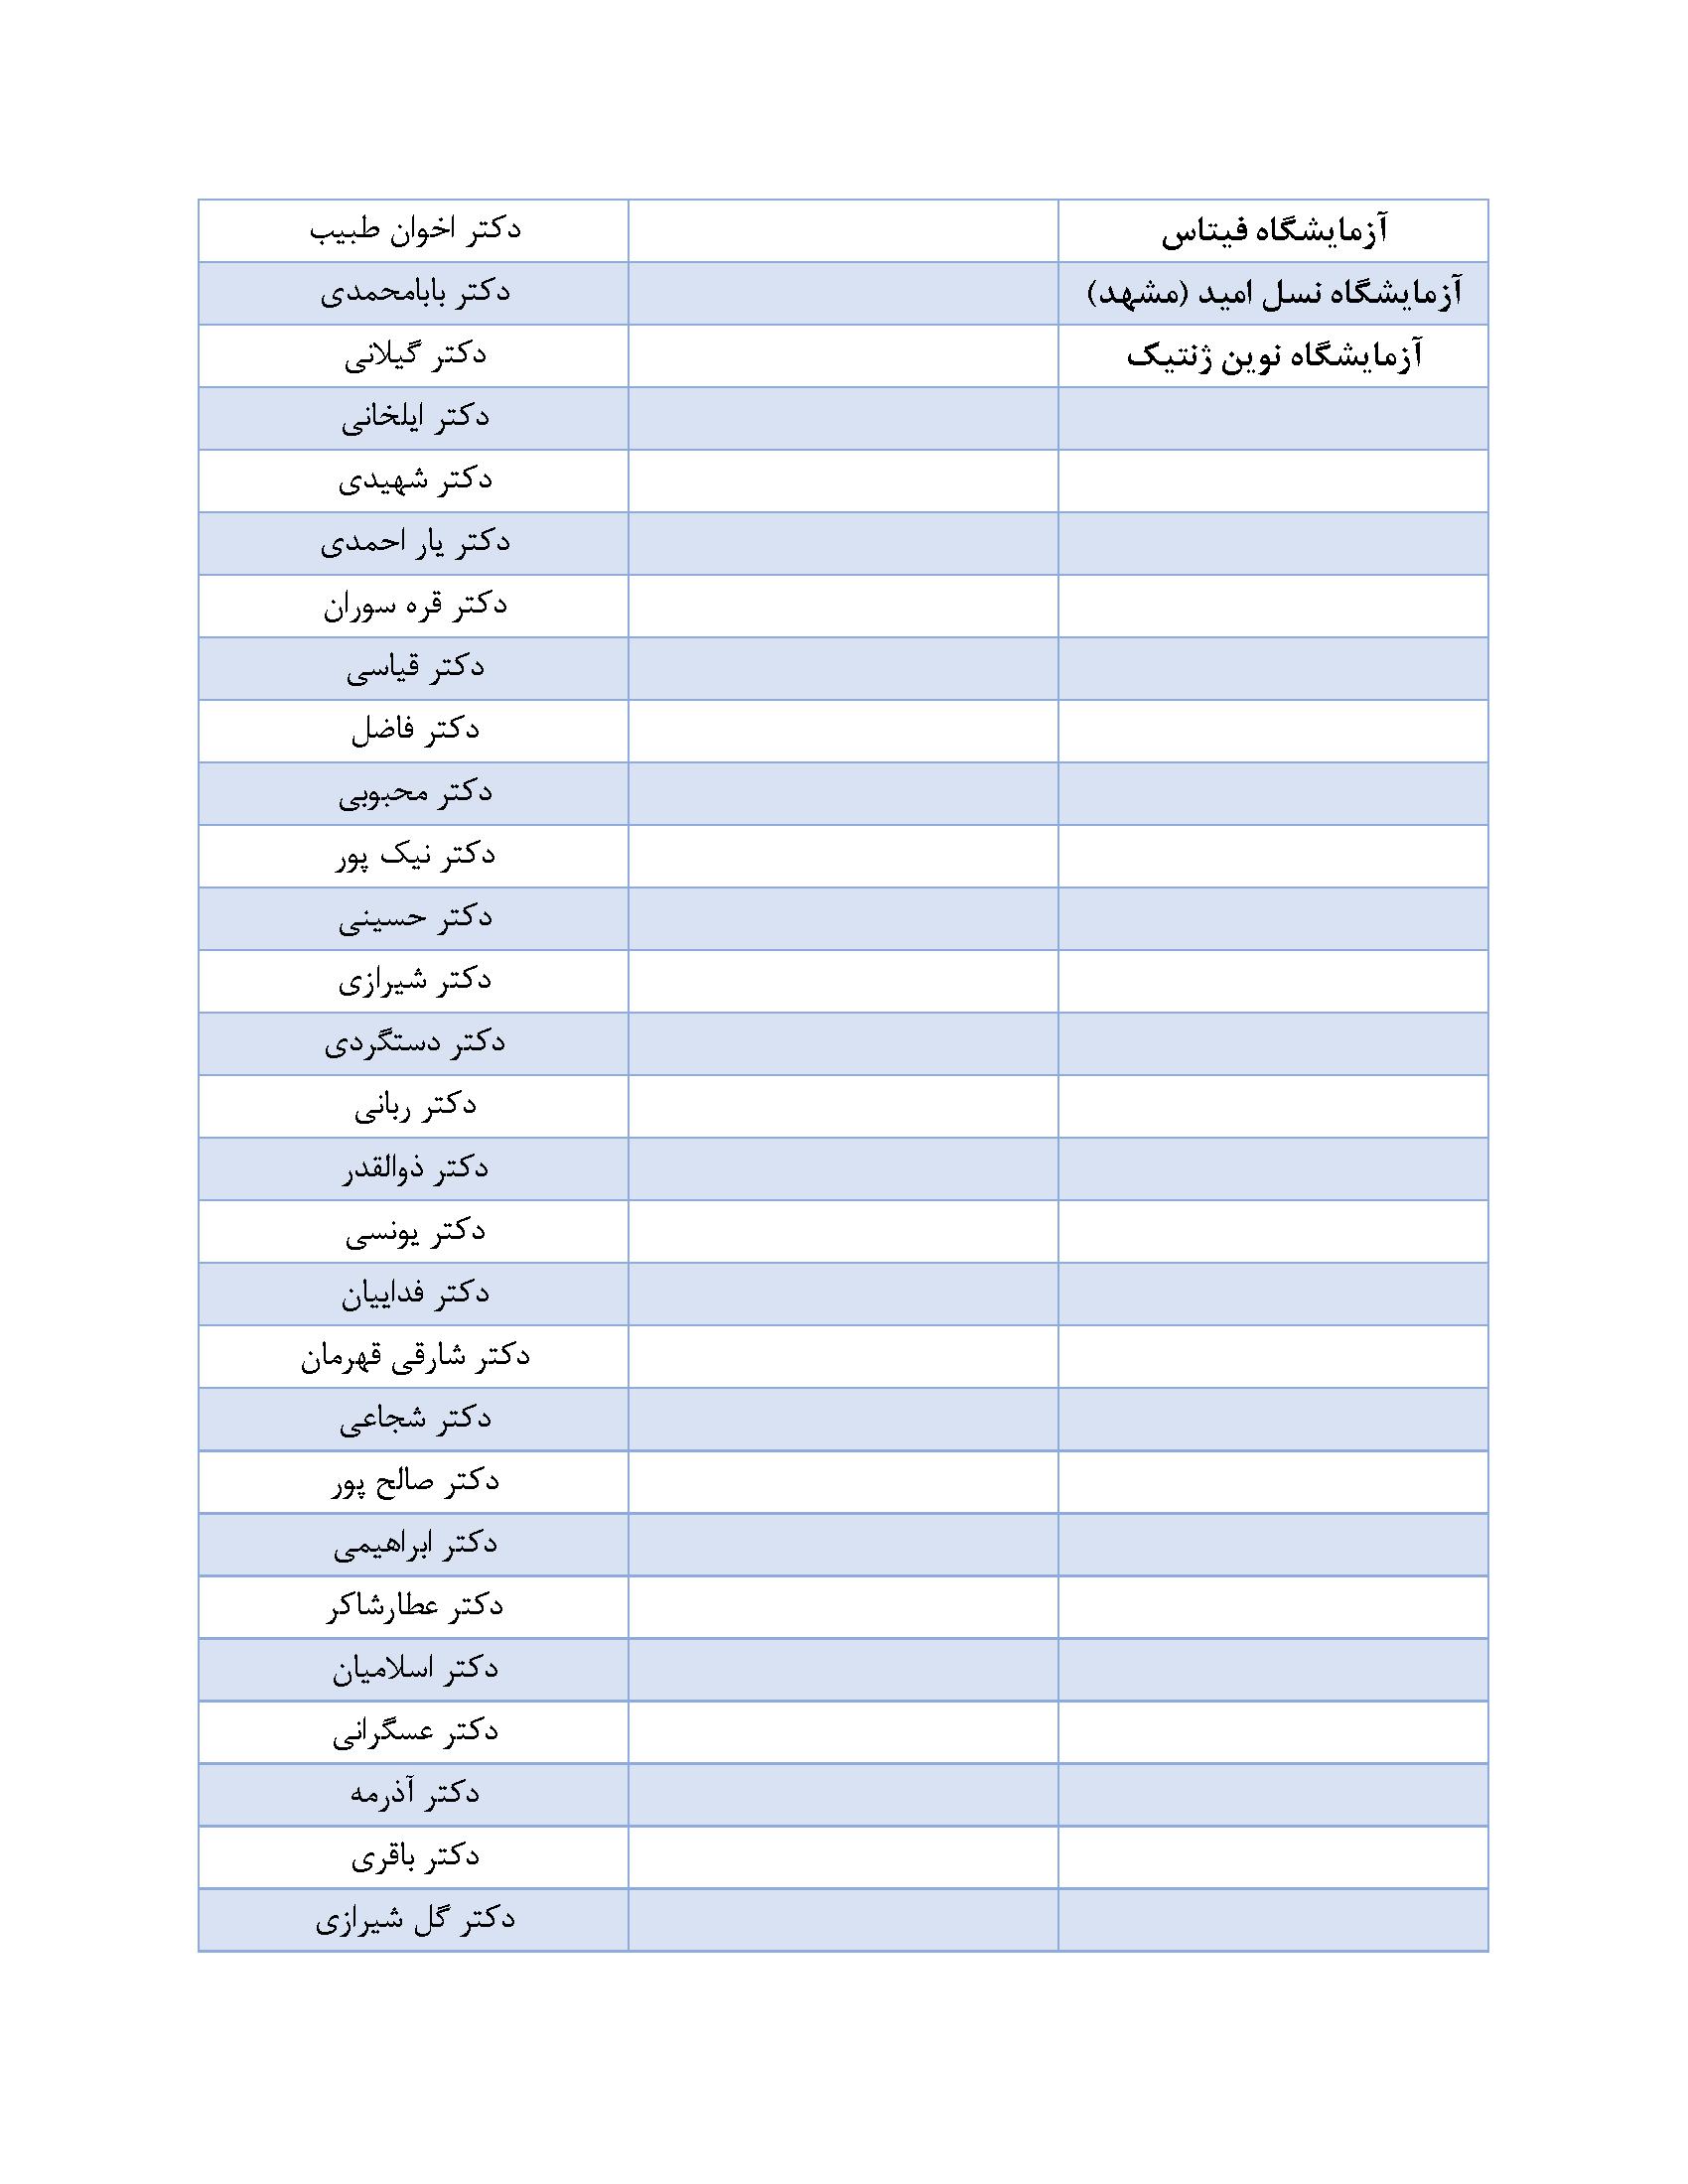 لیست مراکز همکار با آزمایشگاه تهران لب2